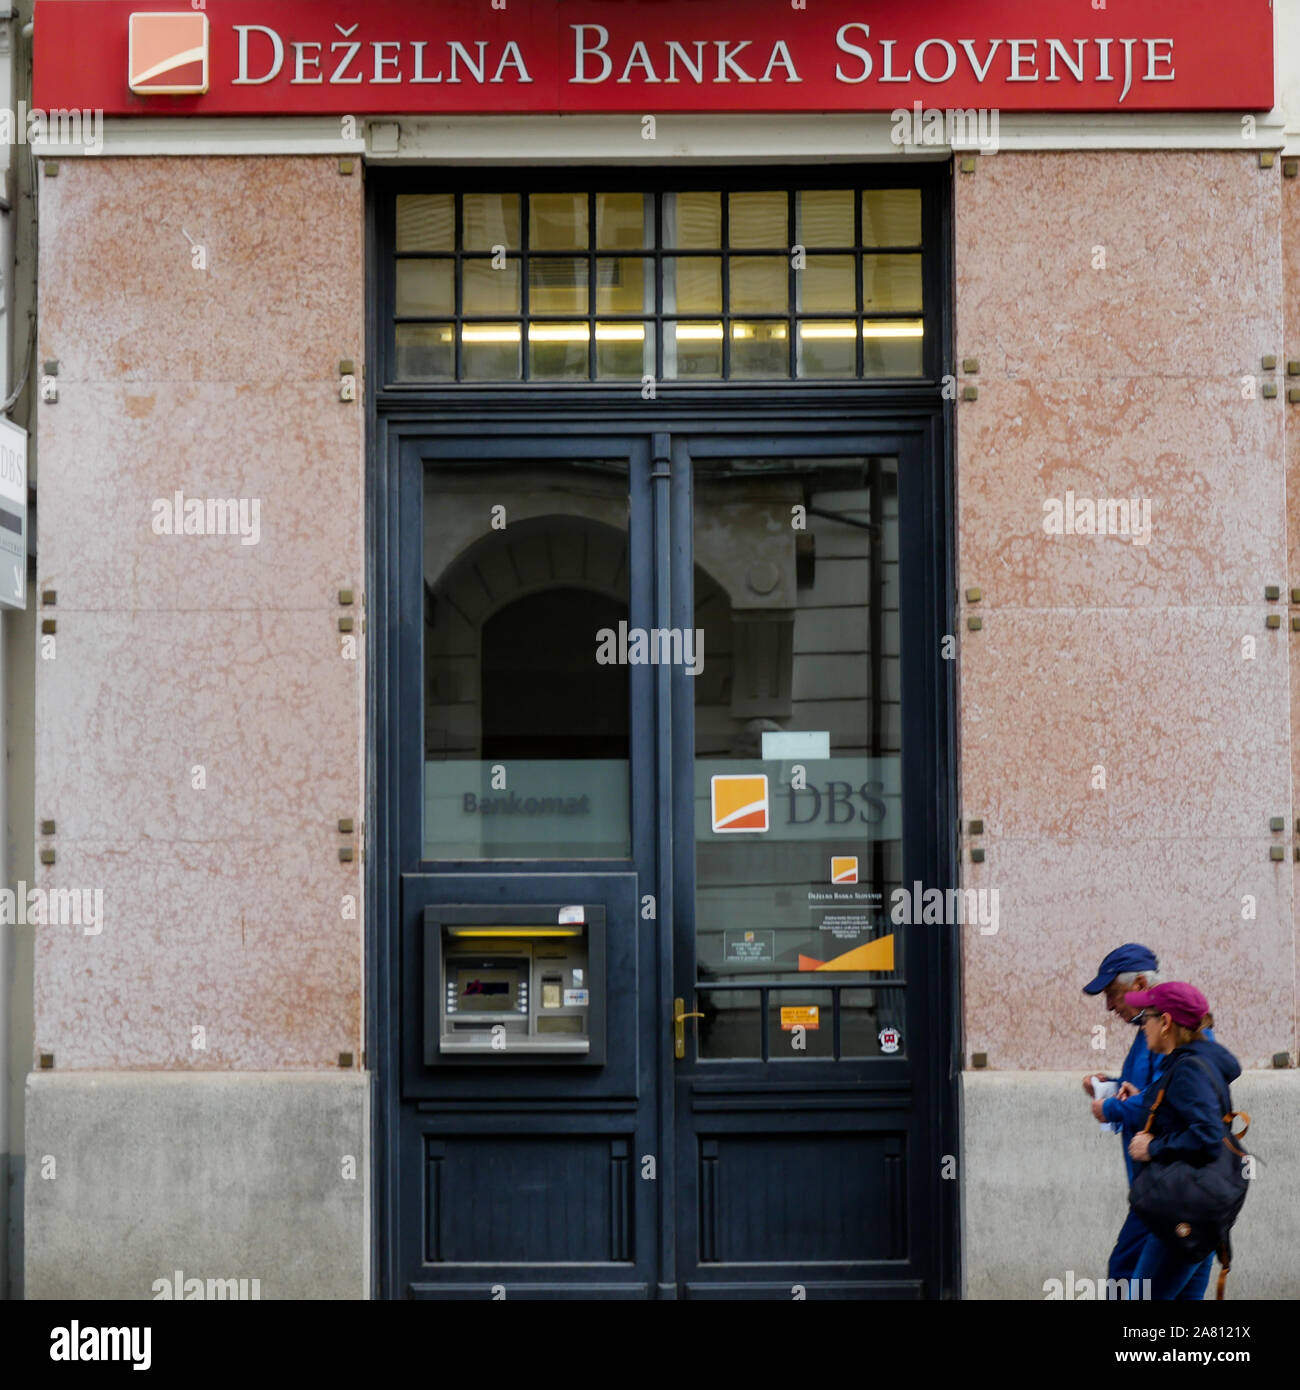 El Banka Slovenije Dezelna agencia, Ljubljana, Eslovenia Foto de stock